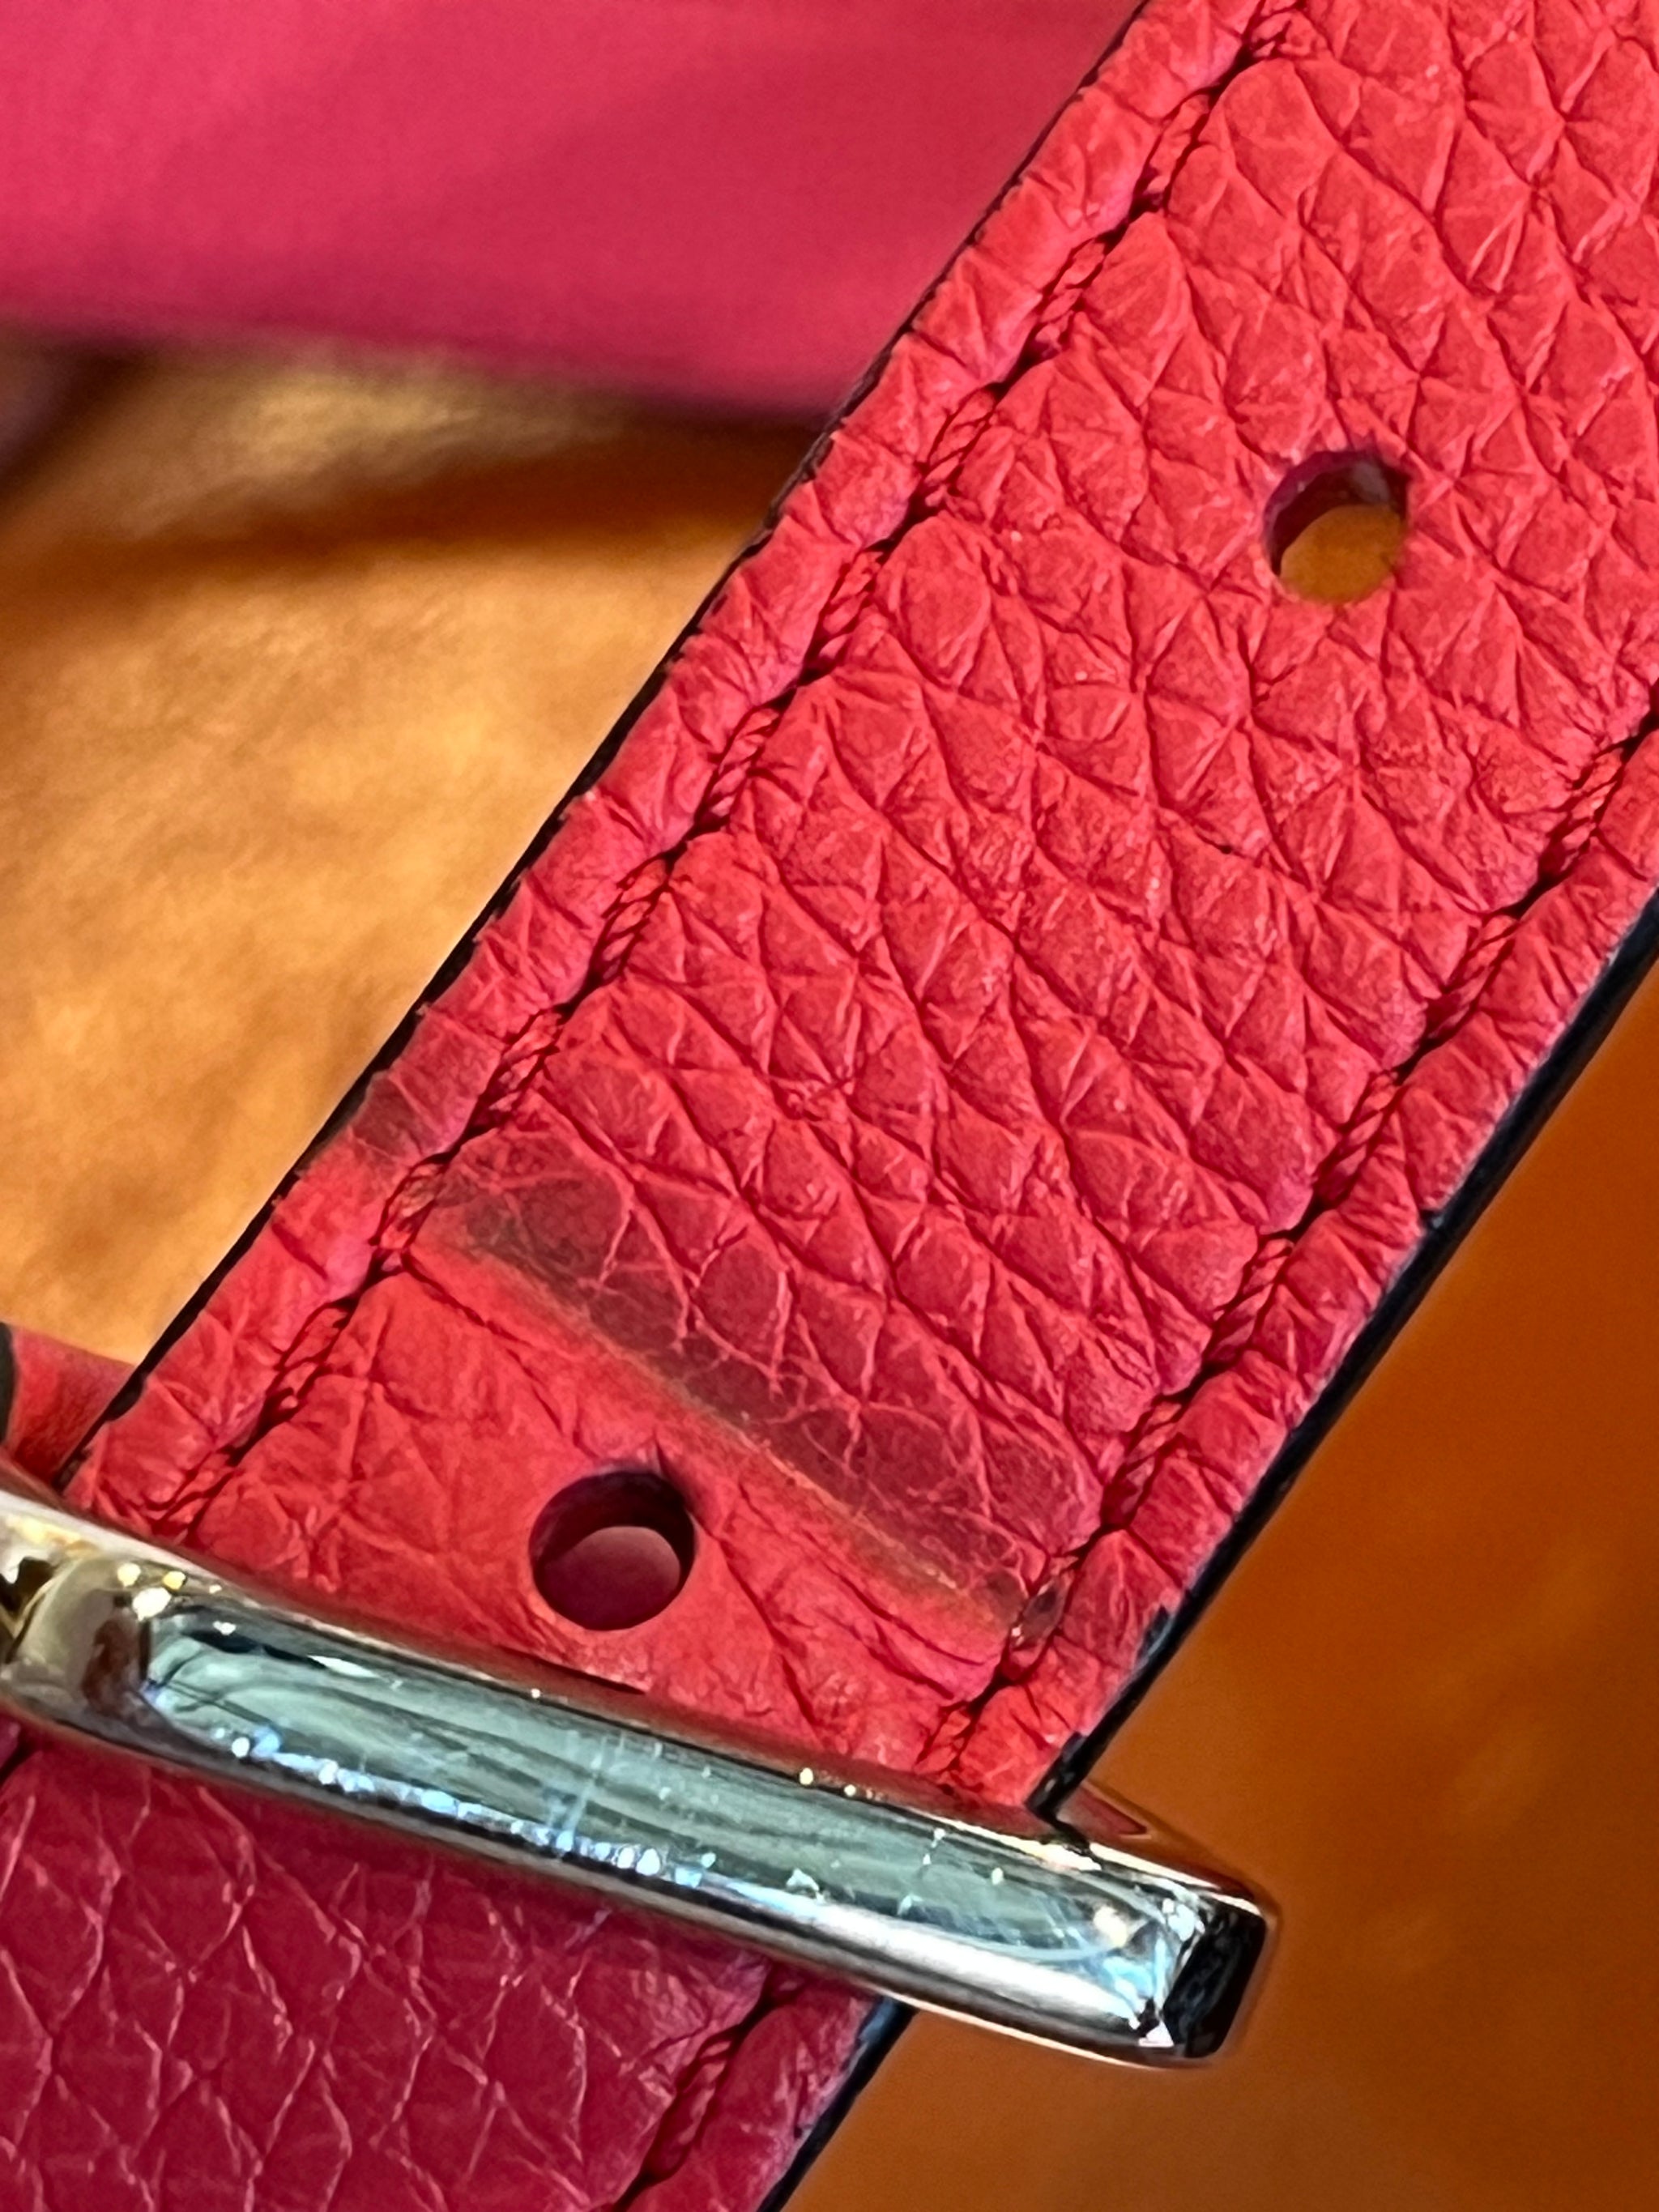 Louis Vuitton Pink Leather Vivienne NM Shoulder Bag Louis Vuitton